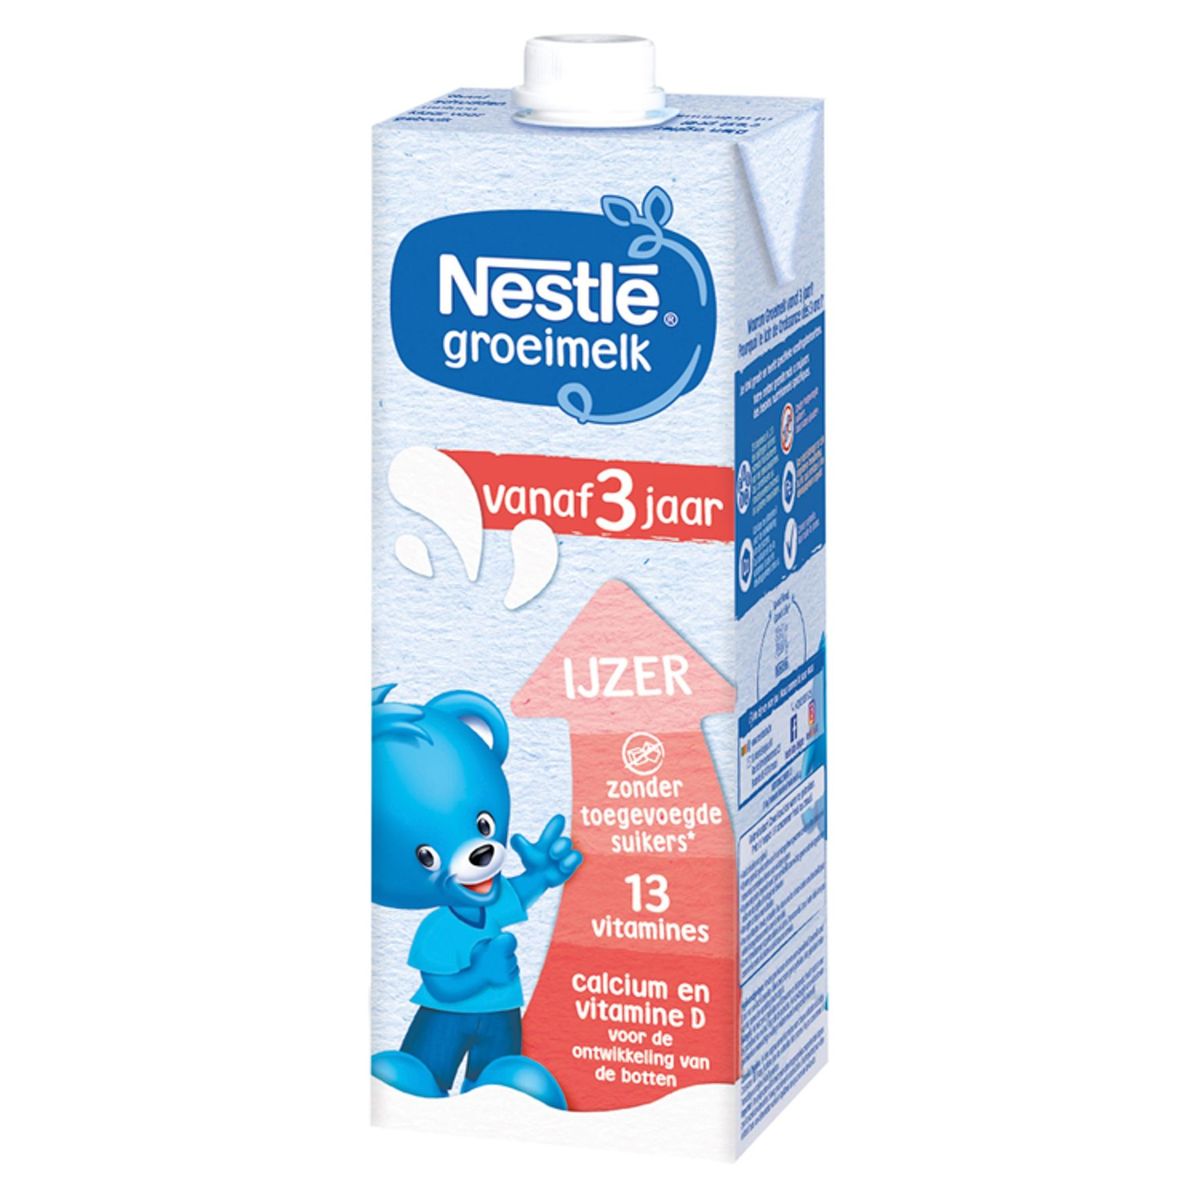 Nestlé® Lait de Croissance 3+ Liquide Bébé dès 3 Ans 1 L